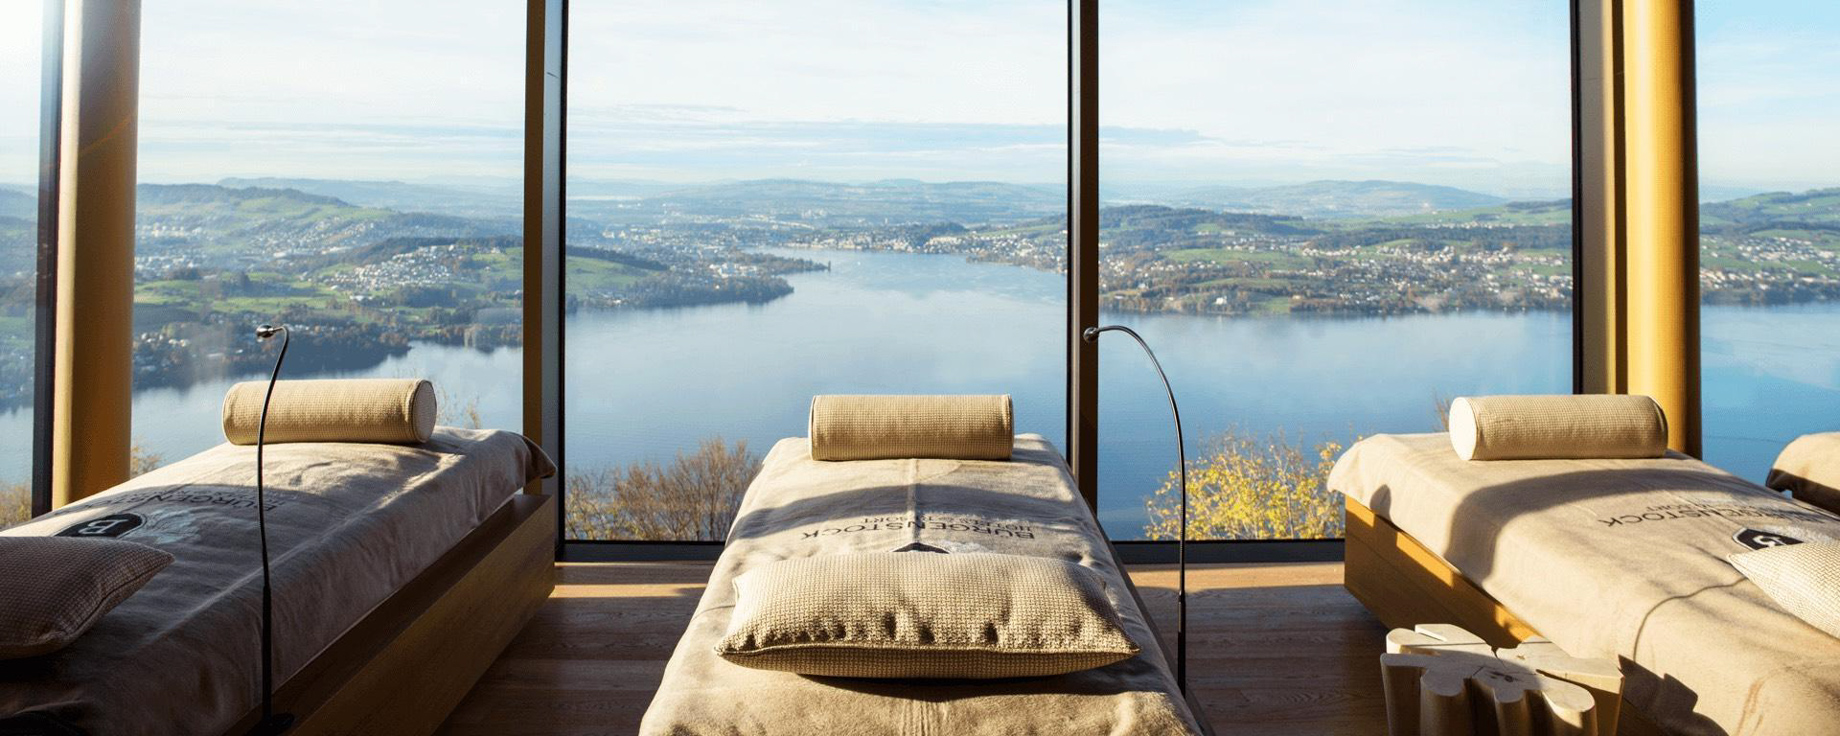 Burgenstock Hotel & Alpine Spa – Obburgen, Switzerland – Alpine Spa Silent Room Lake Lucerne View